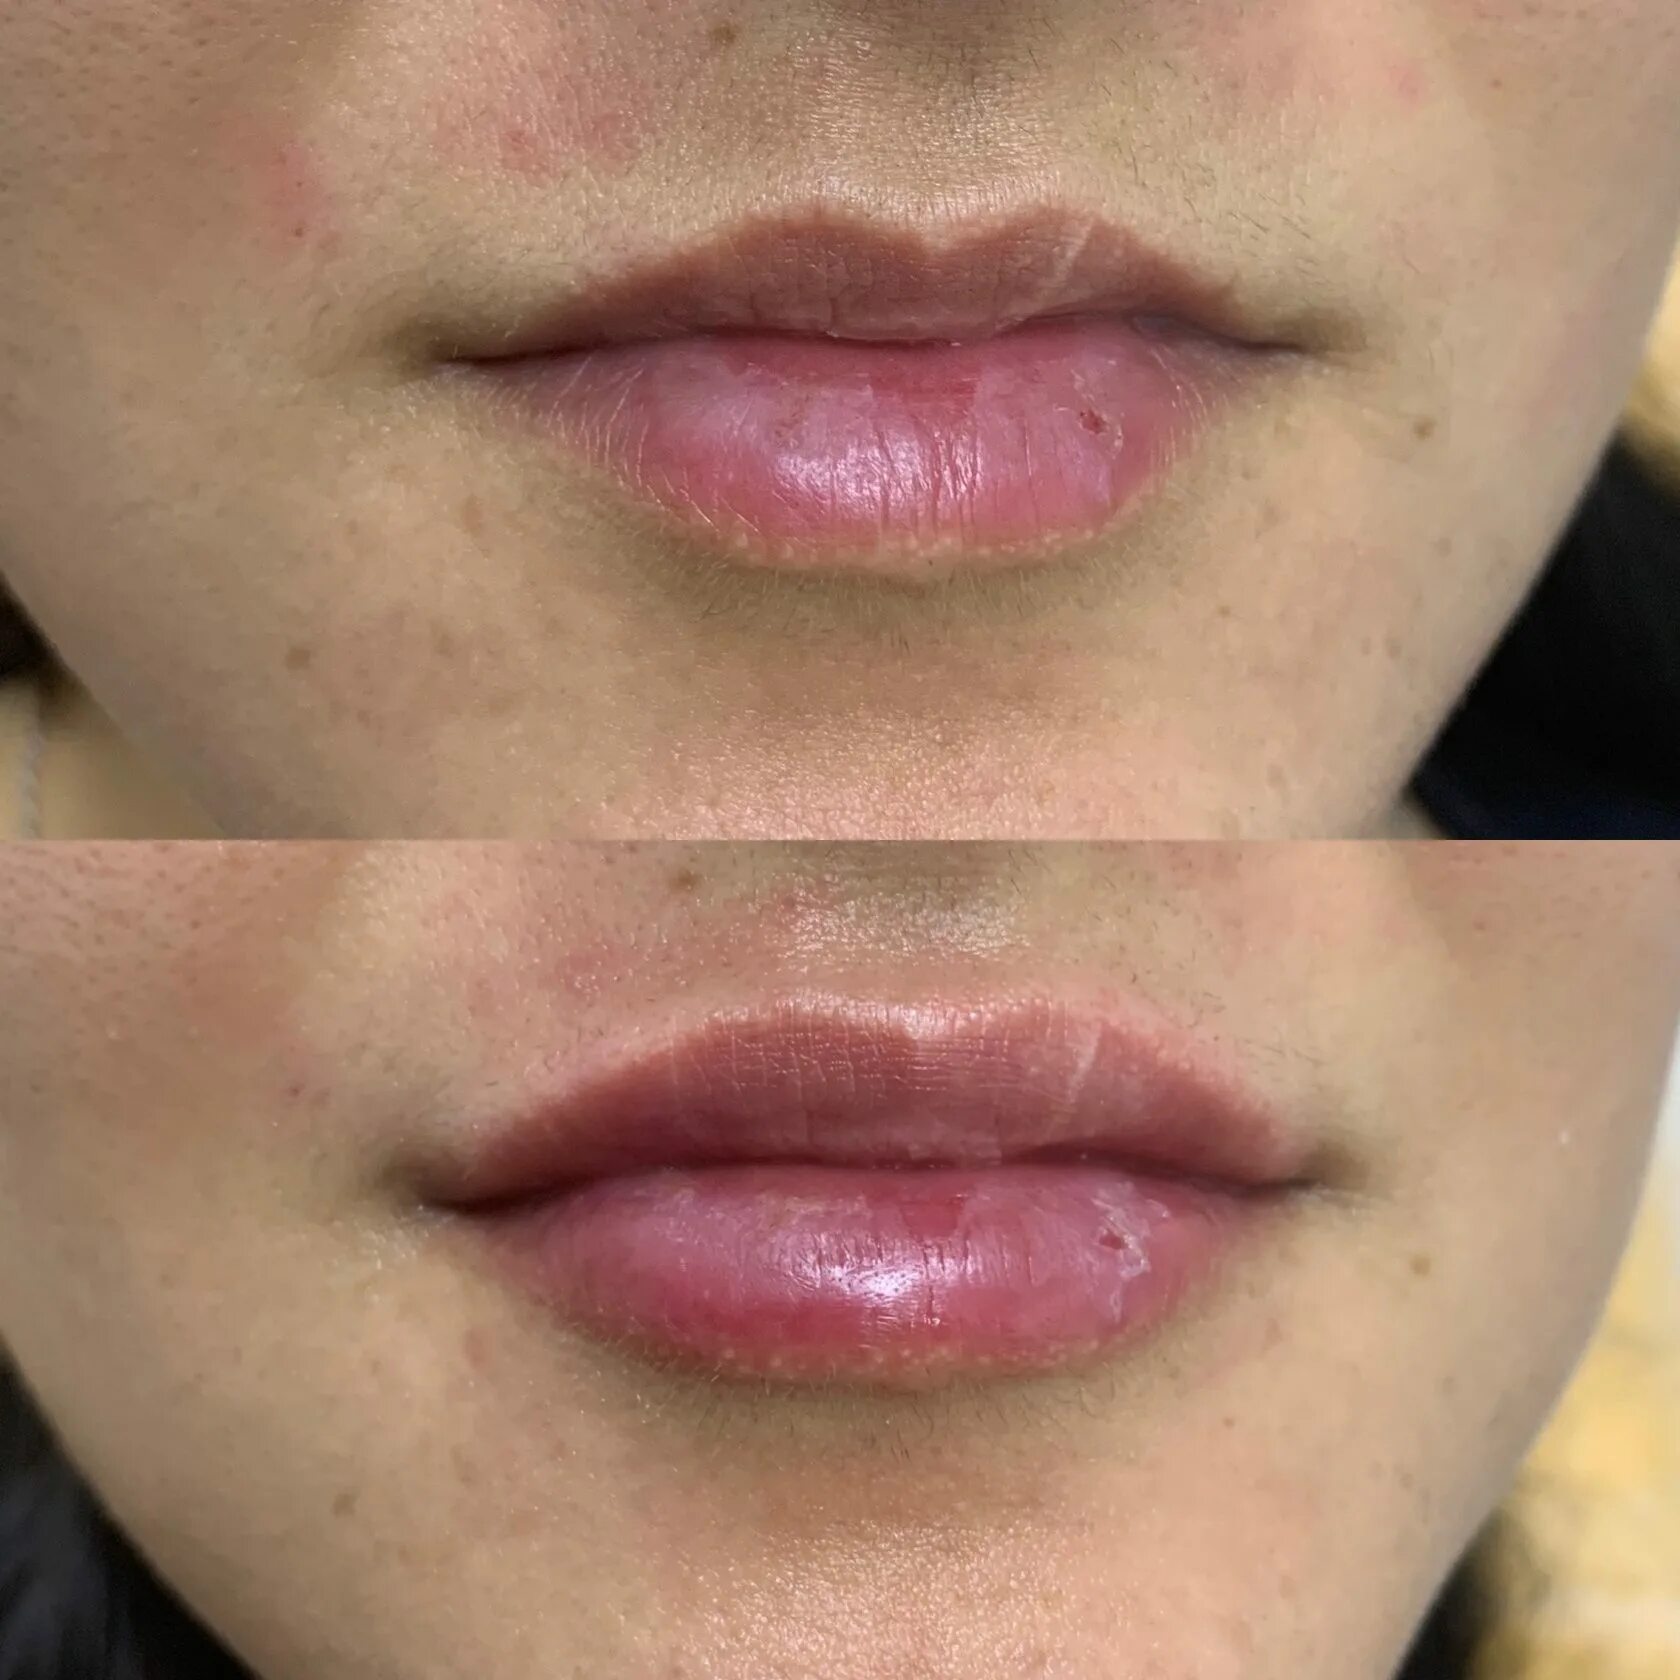 Техники увеличения губ с фото. Коррекция губ. Увлажнение губ гиалуроновой кислотой. Естественные губы гиалуроновой. Накачивание губ гиалуроновой кислотой.